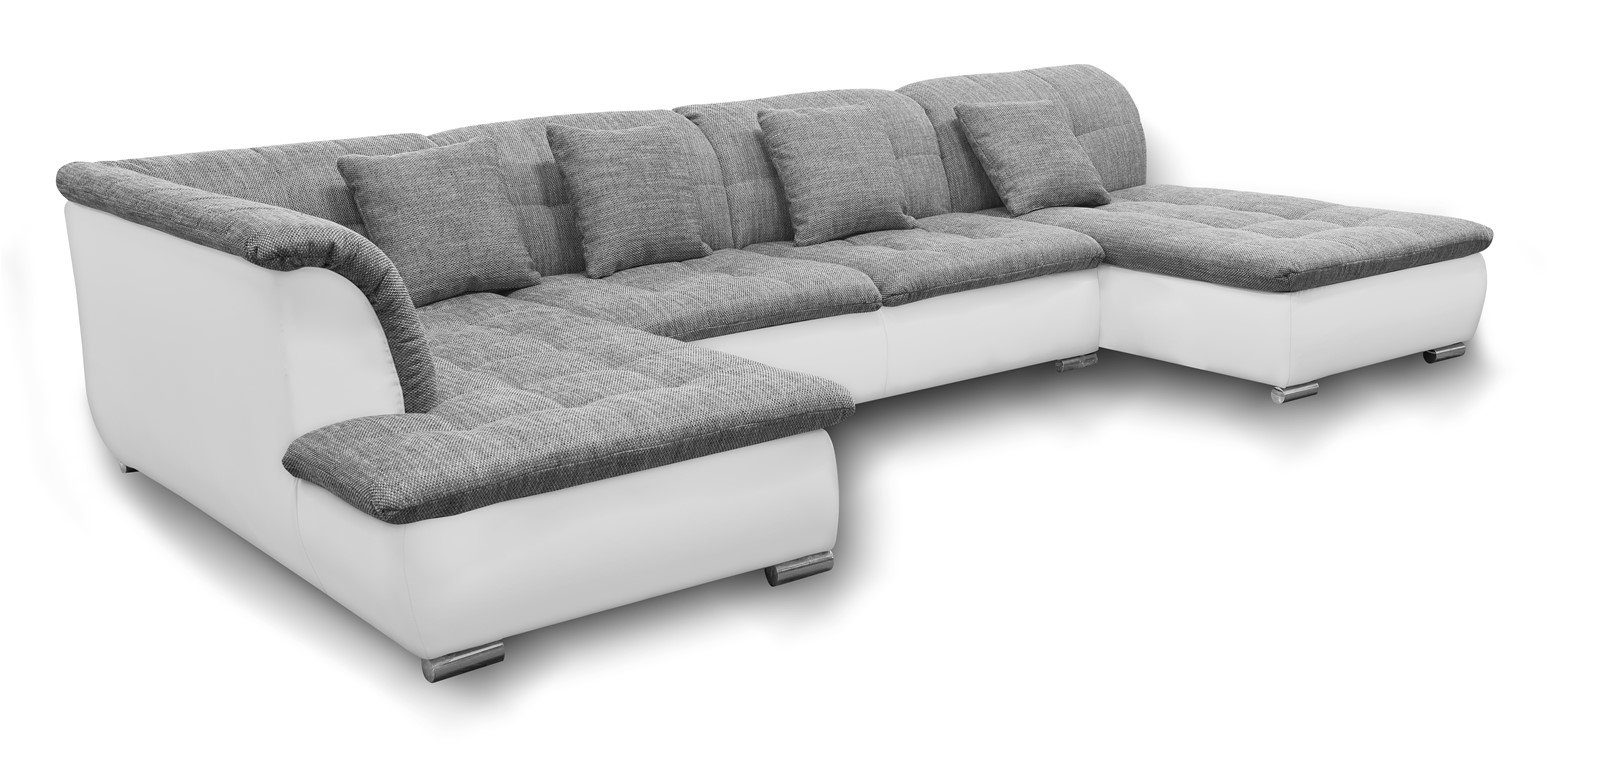 Fun Möbel Wohnlandschaft Couchgarnitur Wohnlandschaft NICOLE, inkl. 4 Rückenkissen, mit oder ohne Schlaffunktion Grau-Weiß